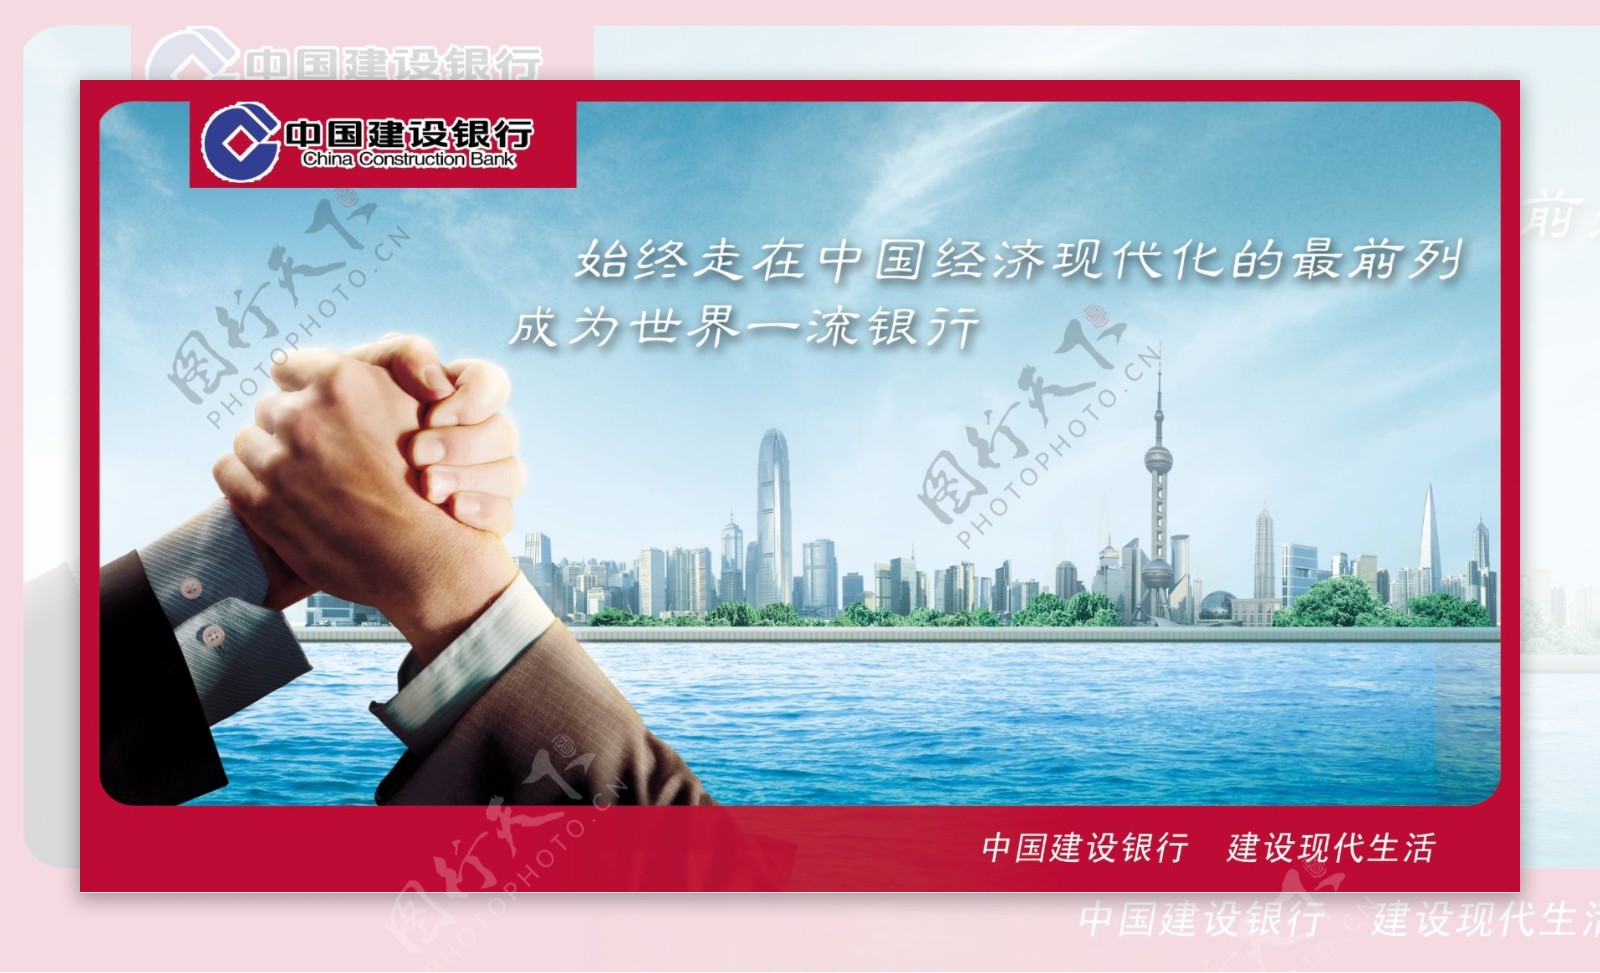 中国建设银行版面图片